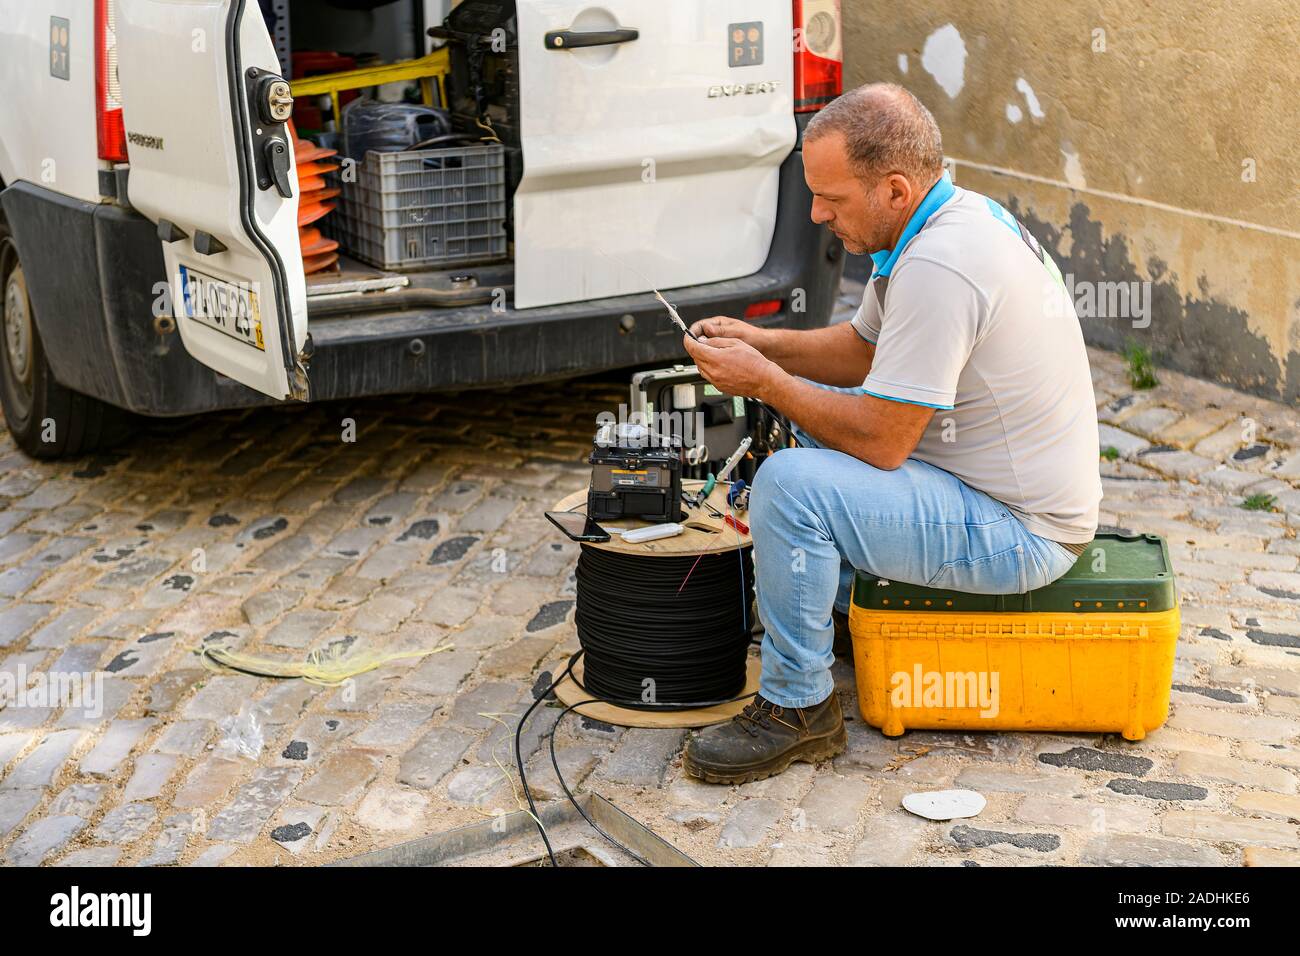 Technicien de téléphonie Faro qui fixe et pose des câbles à fibres optiques. Faro, Algarve de l'est, Portugal. Banque D'Images